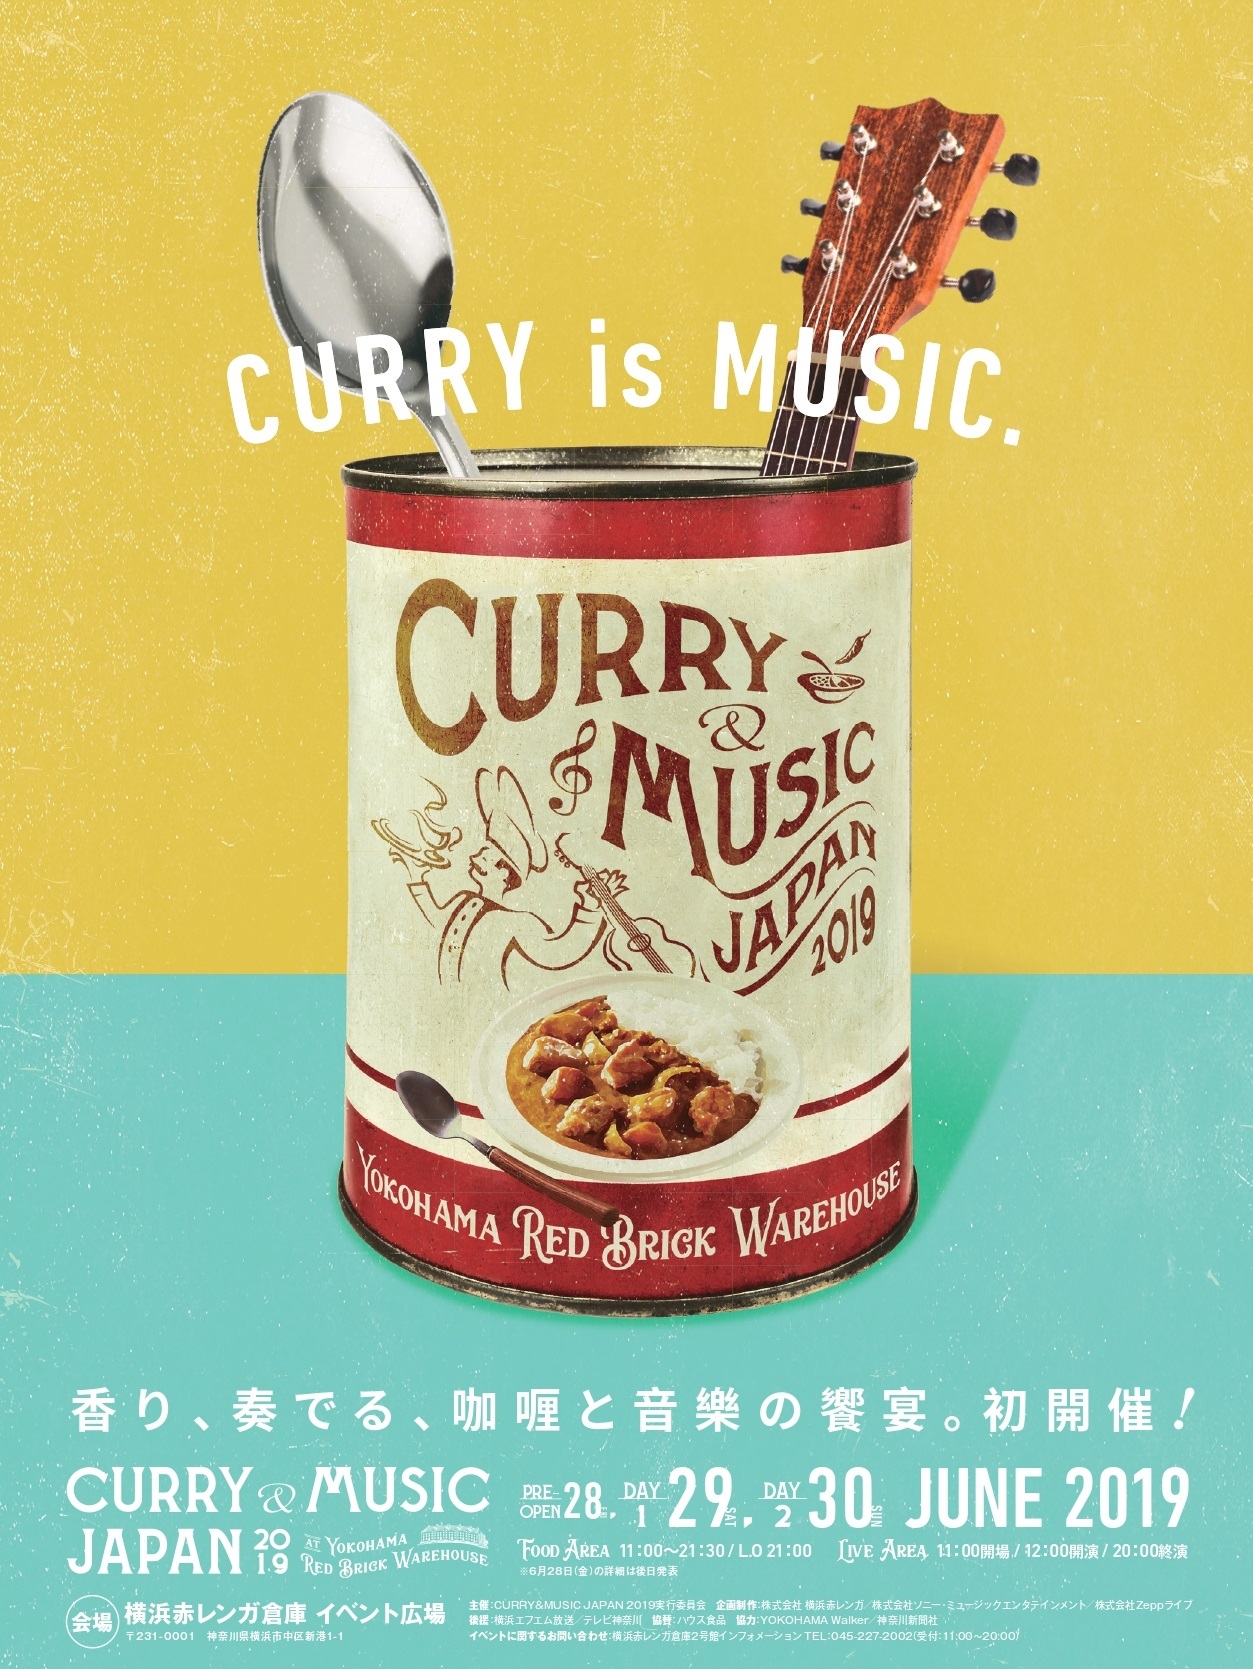 Curry Music Japan 19 追加アーティストに真心ブラザーズ Puffyら7組 多彩な拘りカレーも発表 Spice エンタメ特化型情報メディア スパイス